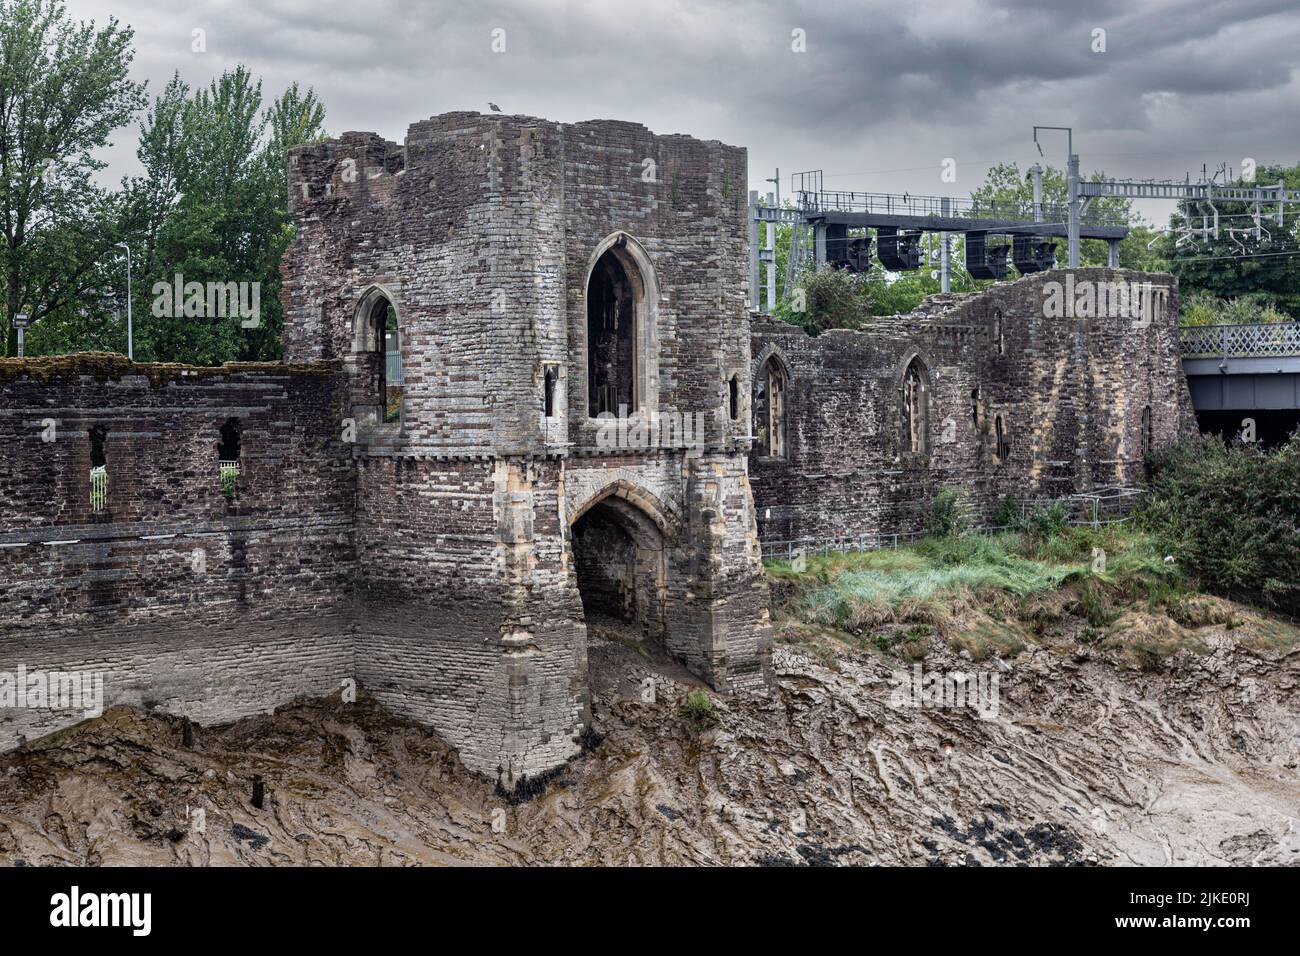 Ruines du château de Newport, Newport, Monbucshire, pays de Galles du Sud, Royaume-Uni Banque D'Images